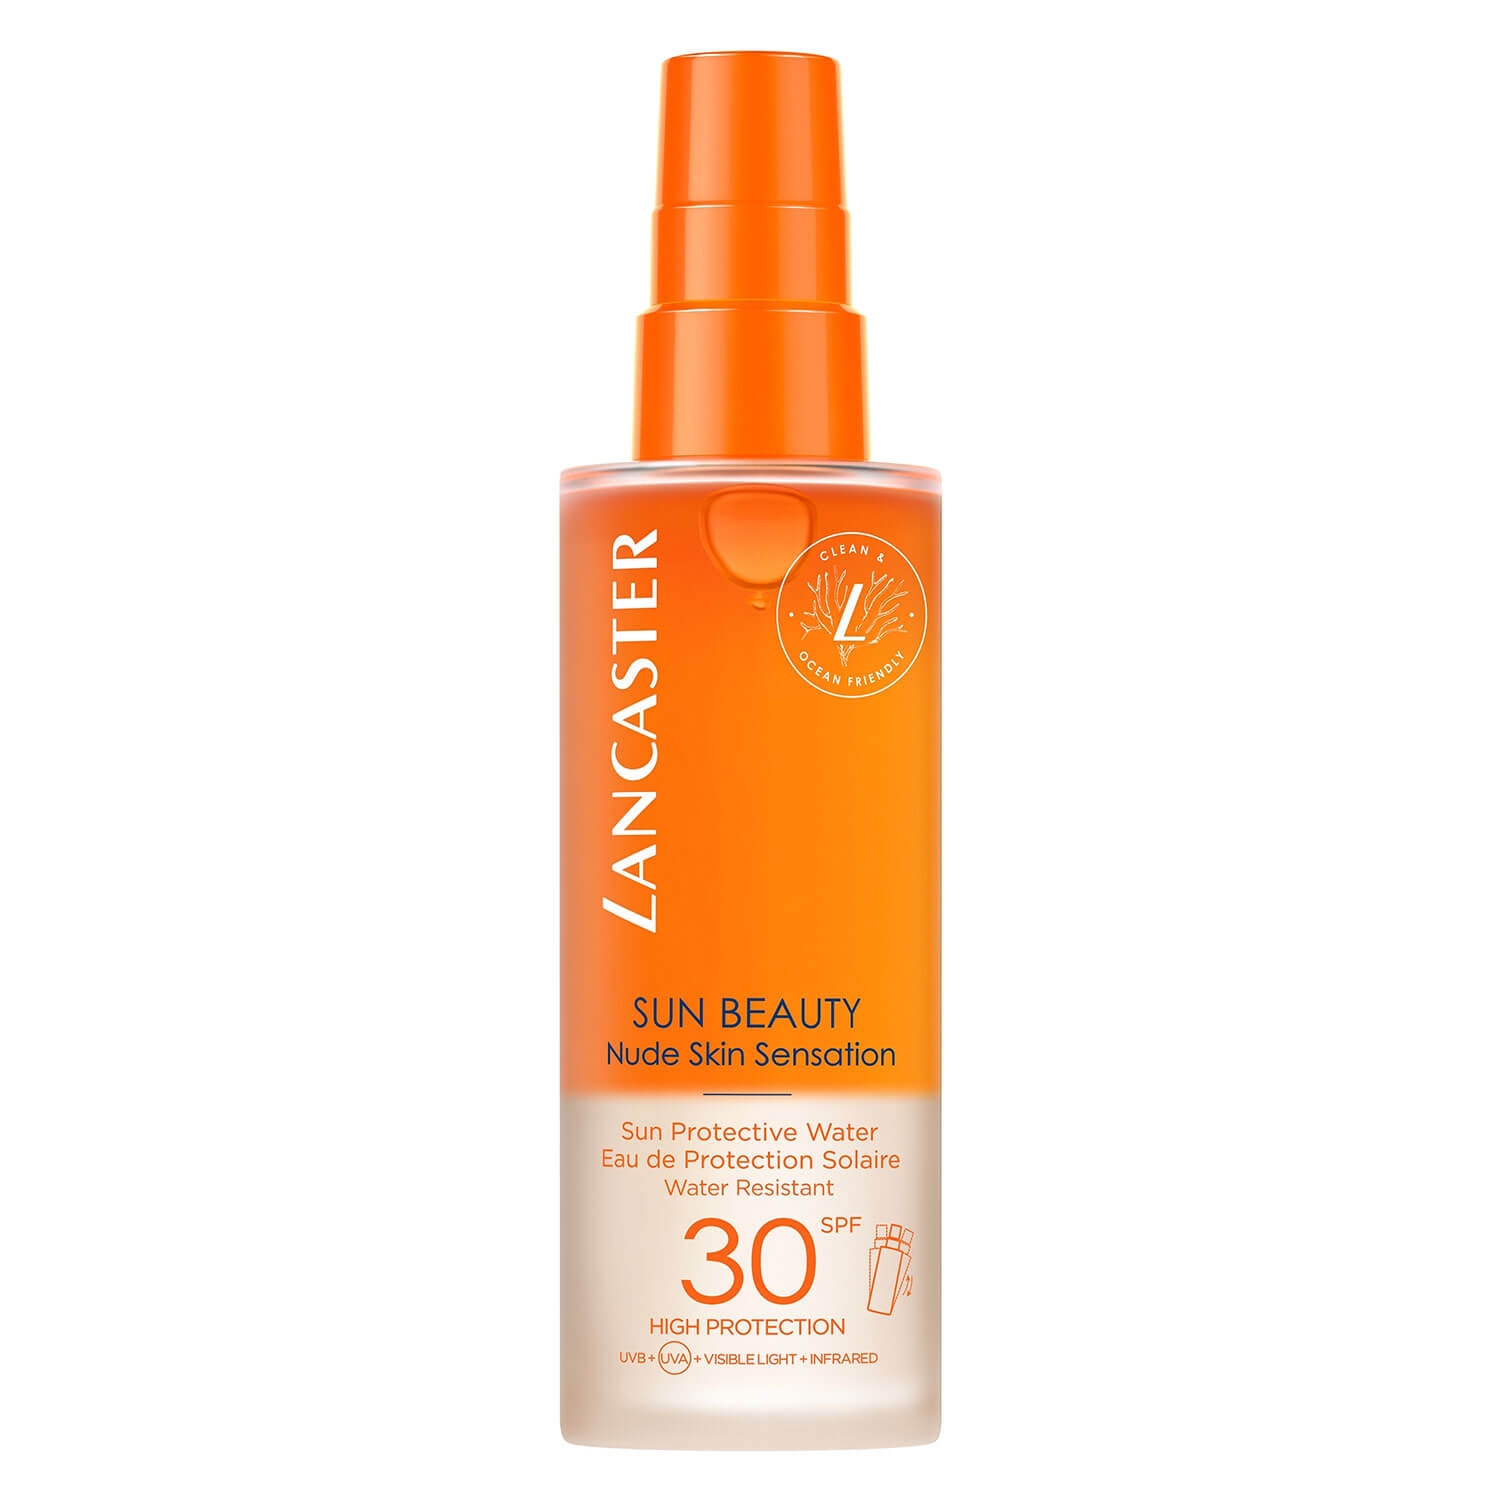 Produktbild von Sun Beauty - Nude Skin Sensation Sun Protection Water SPF30